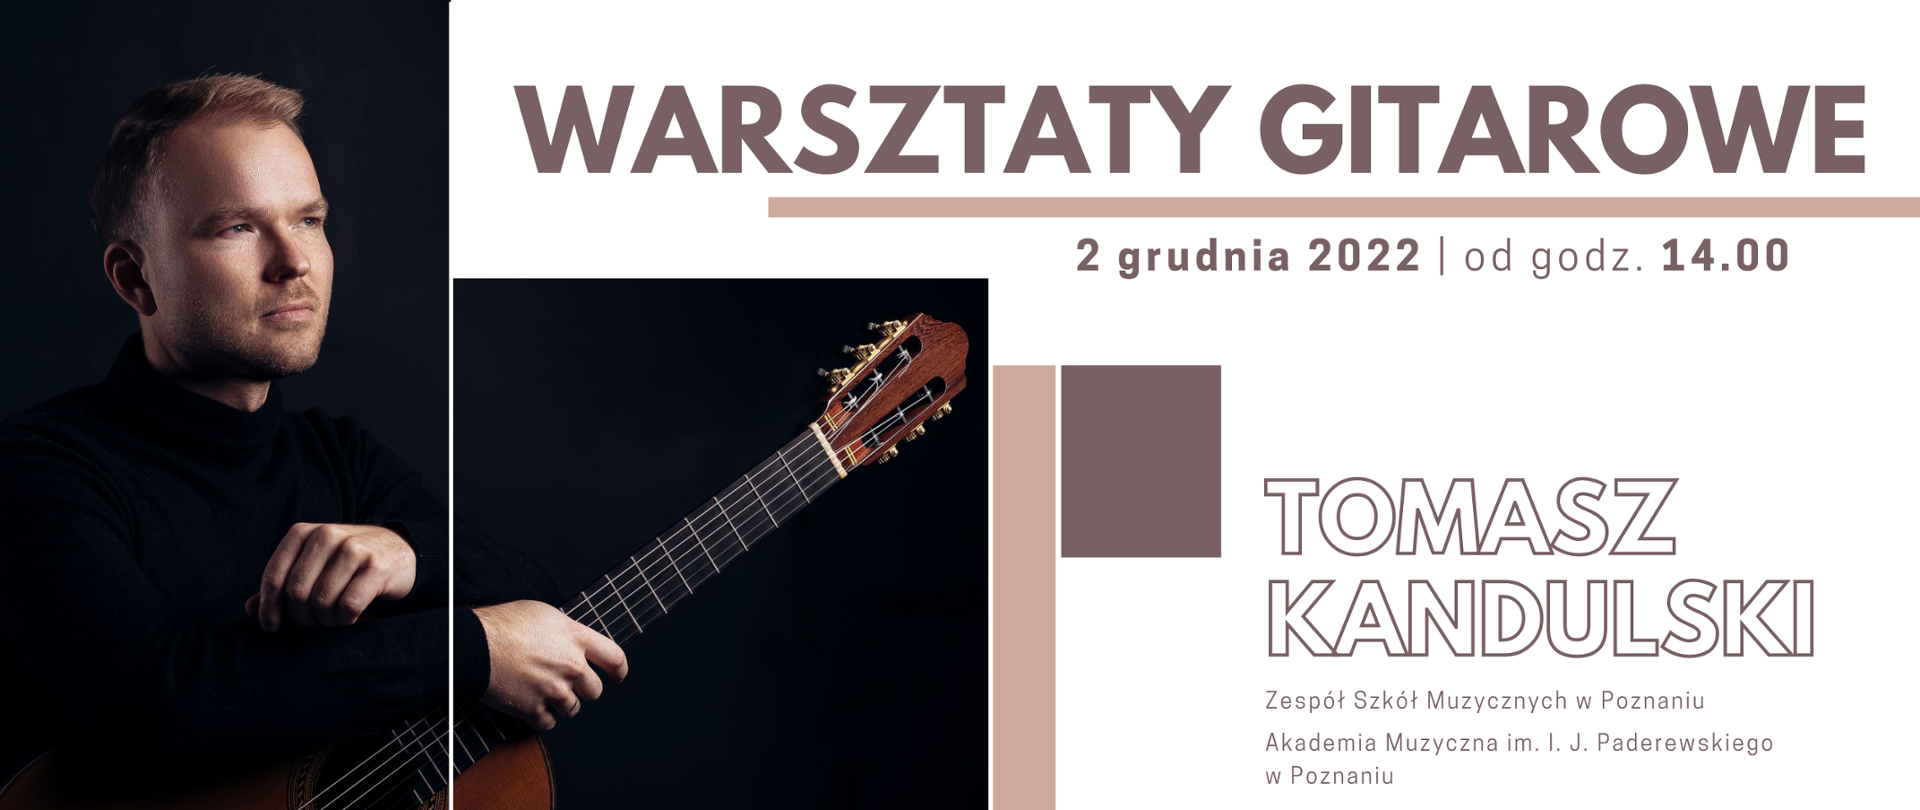 Banner na białym tle przedstawiający sylwetkę gitarzysty Tomasza Kandulskiego oraz szczegółowe dane dotyczące warsztatów gitarowych (datę, godzinę oraz miejsce wydarzenia)